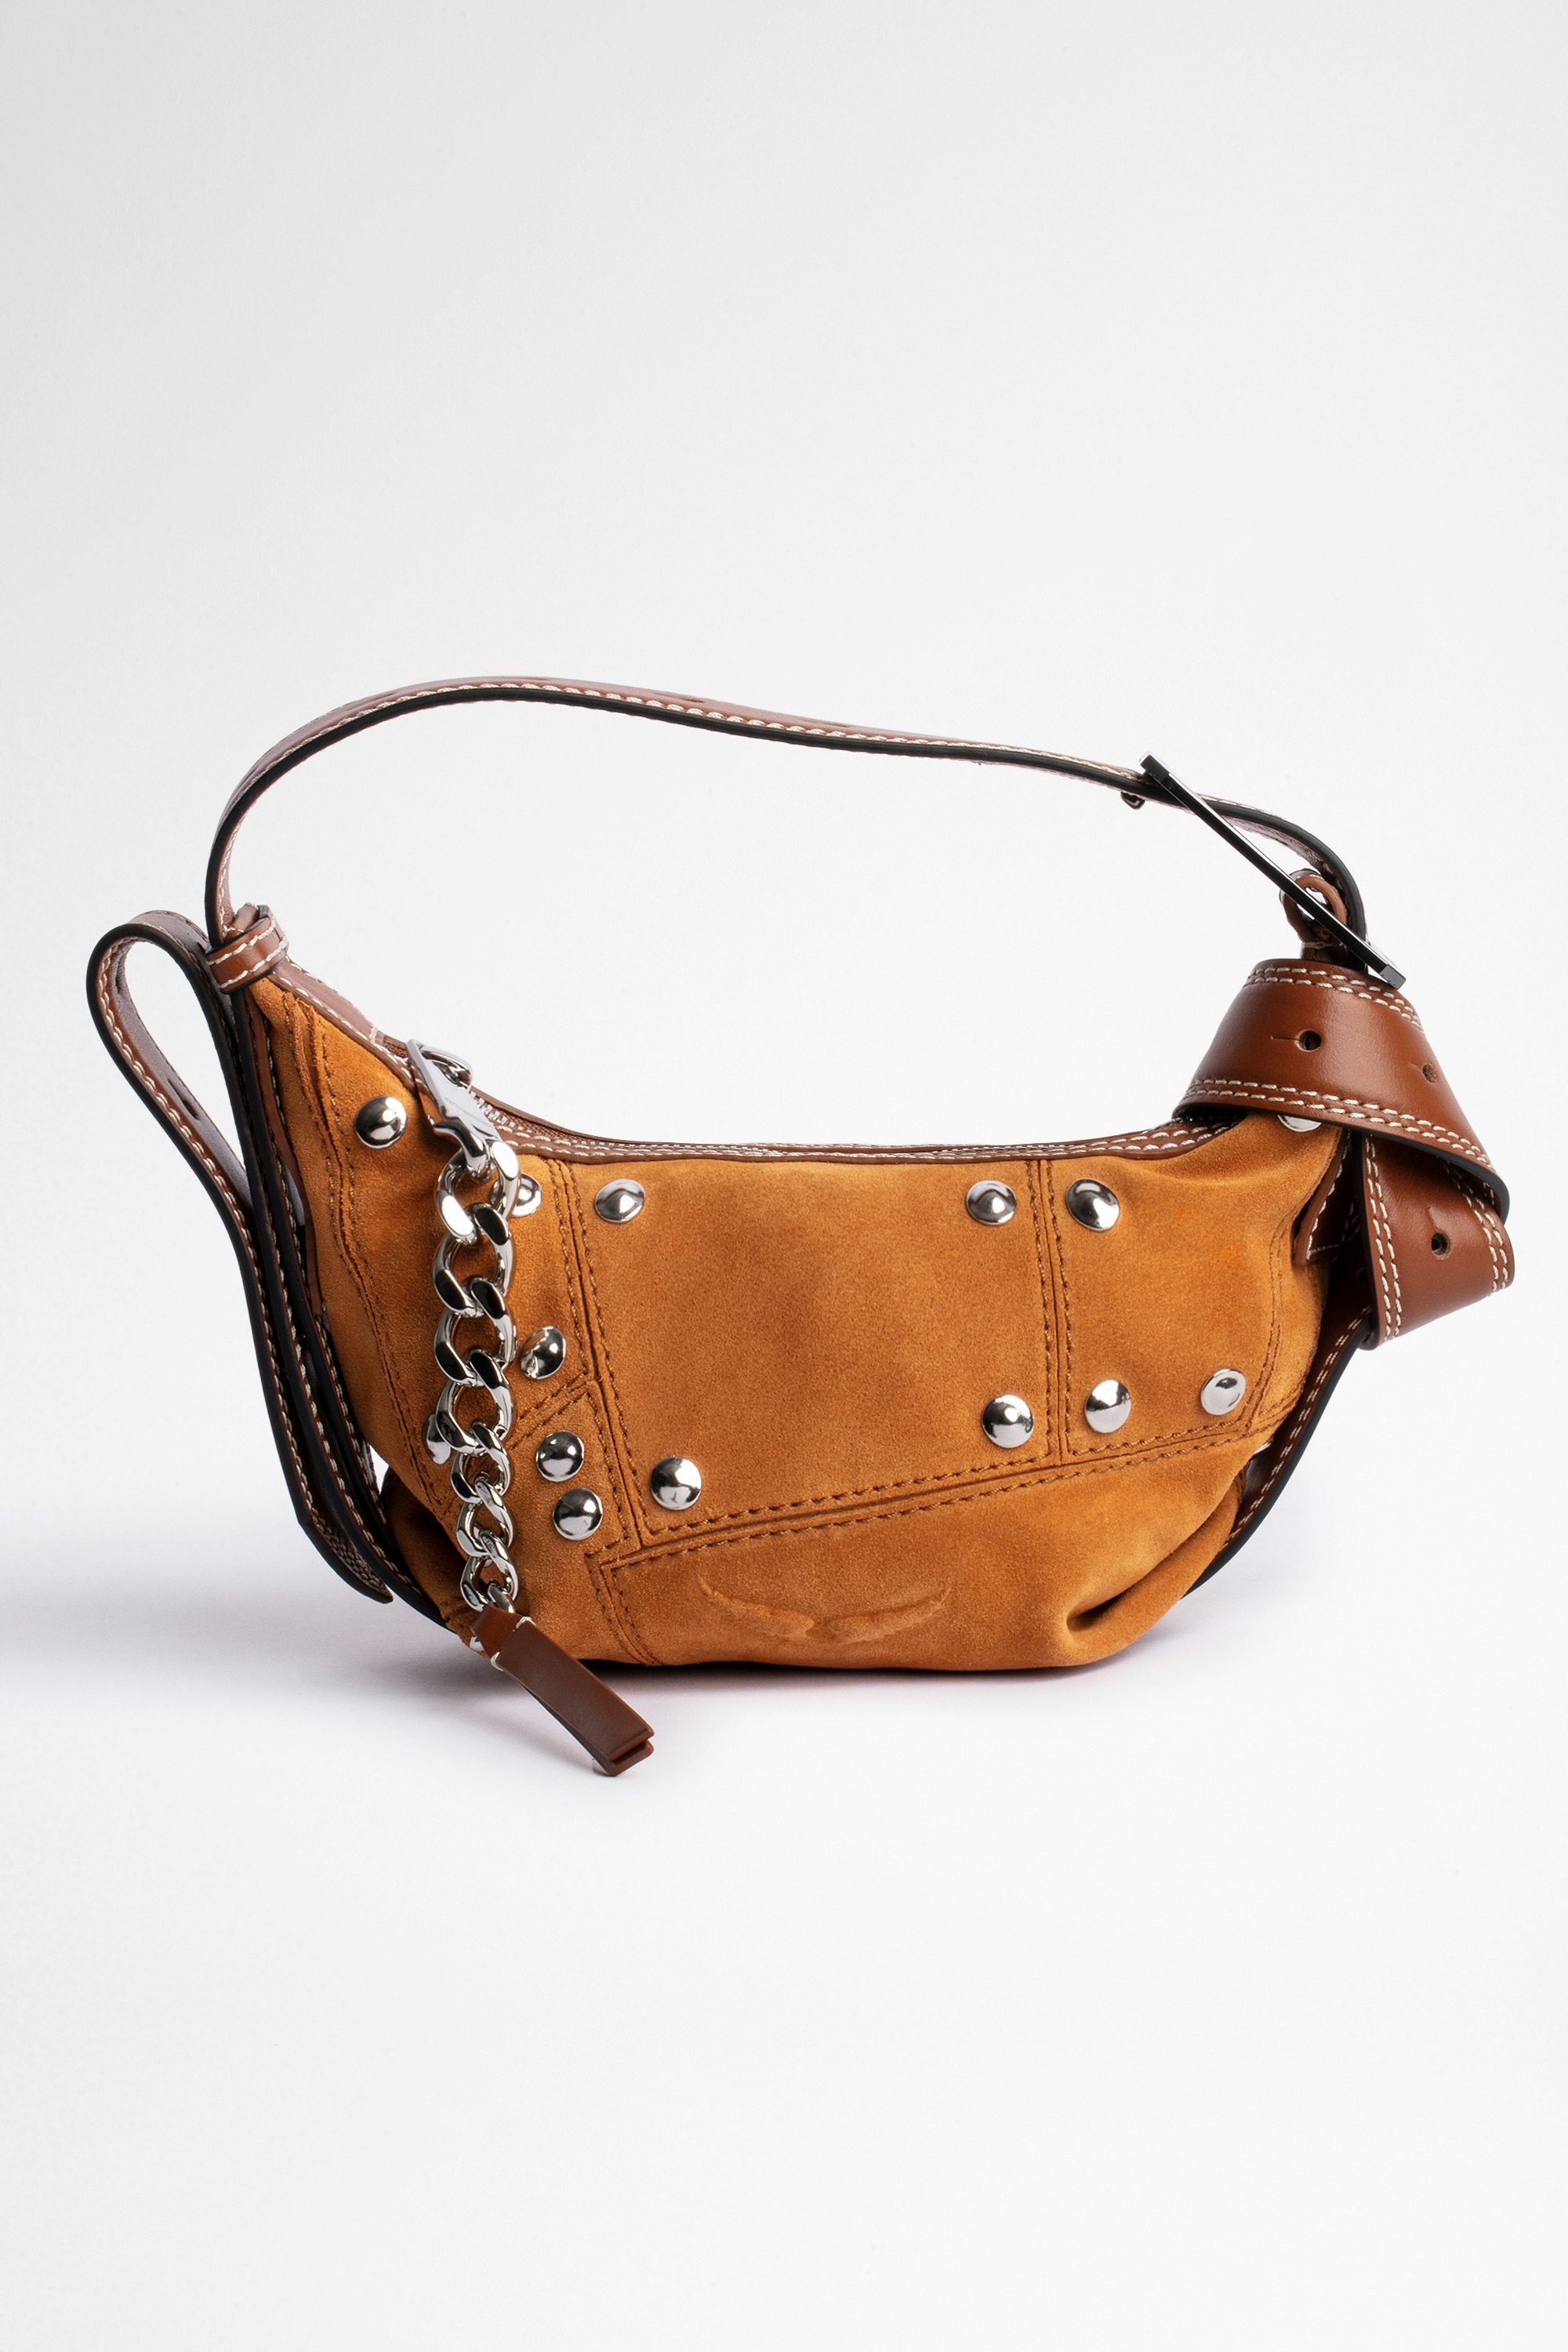 Handtasche Le Cecilia XS Schultertasche aus kamelfarbenem Patchwork-Wildleder. Mit dem Kauf dieses Produkts unterstützen Sie eine verantwortungsvolle Lederproduktion gemäß der Leather Working Group.